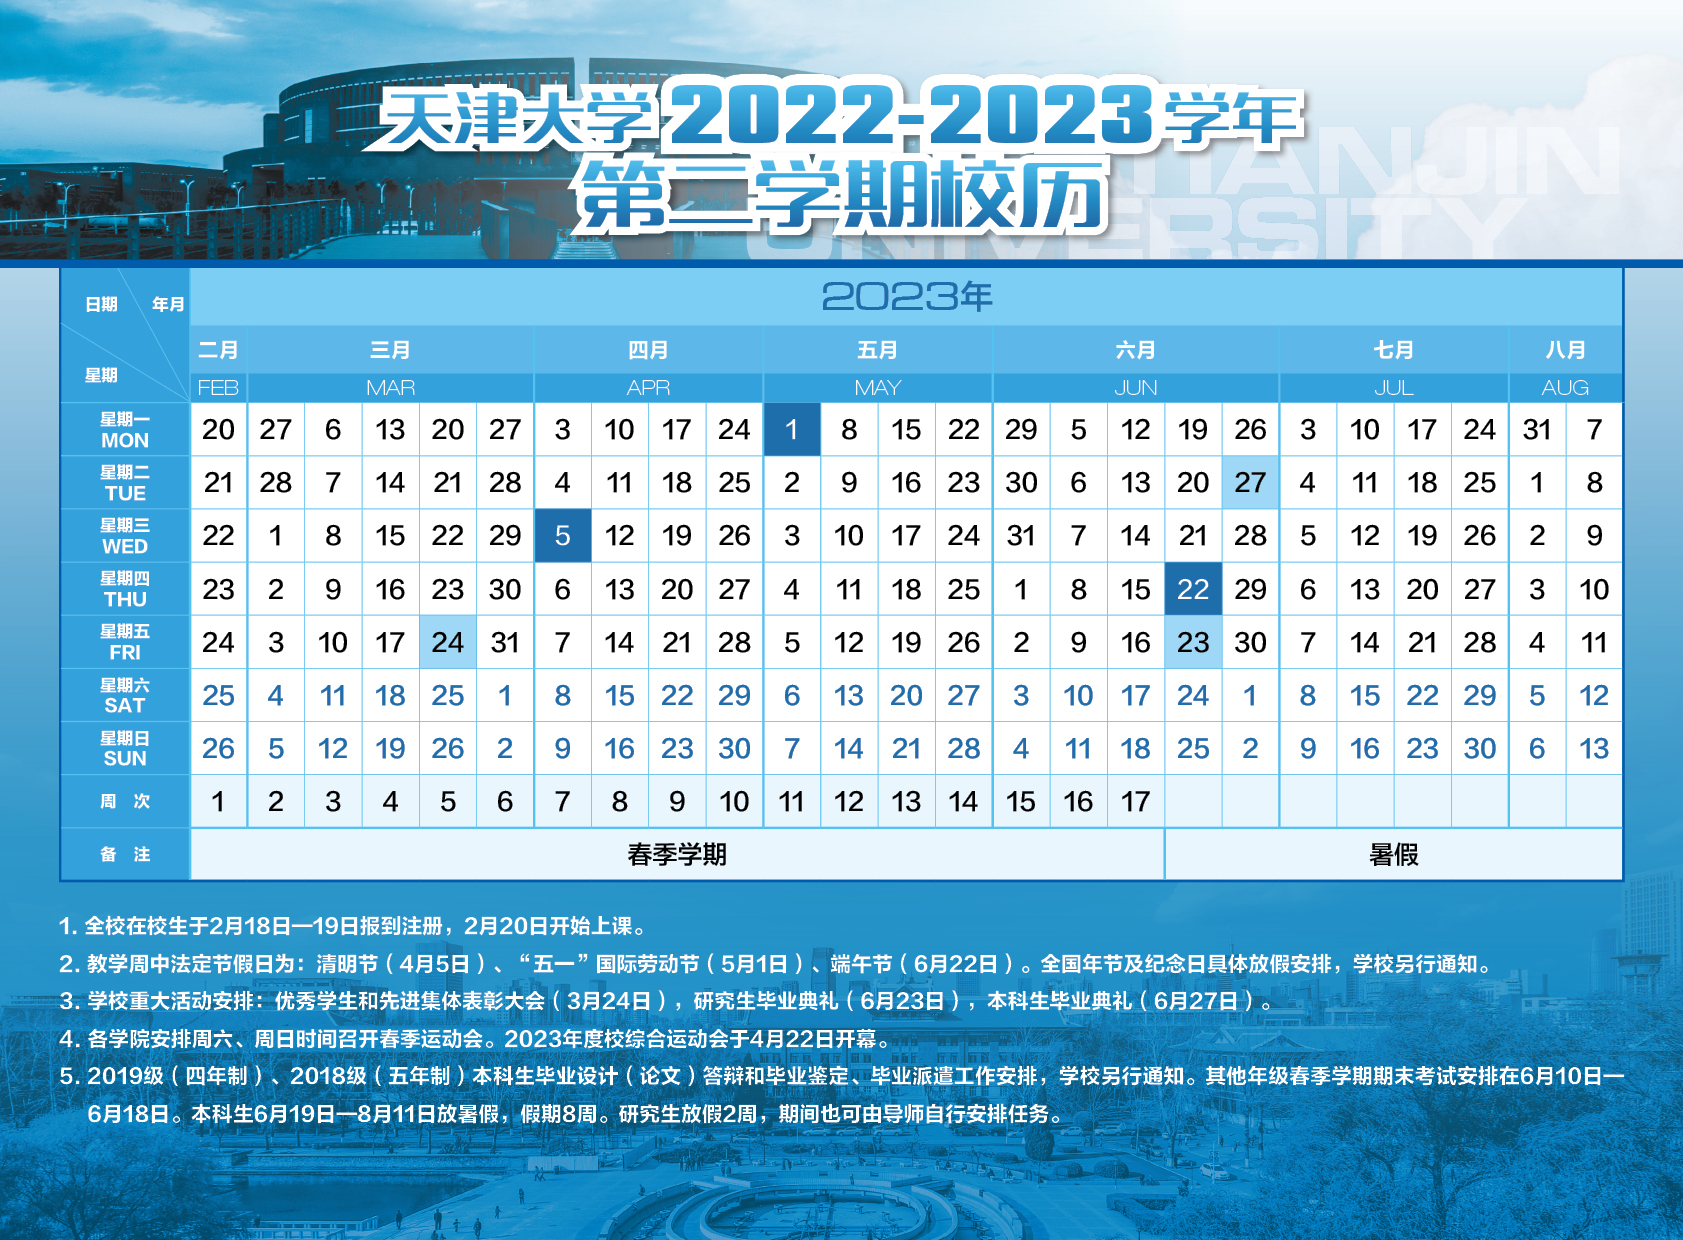 天津大学2022-2023学年第二学期校历.jpg.jpg